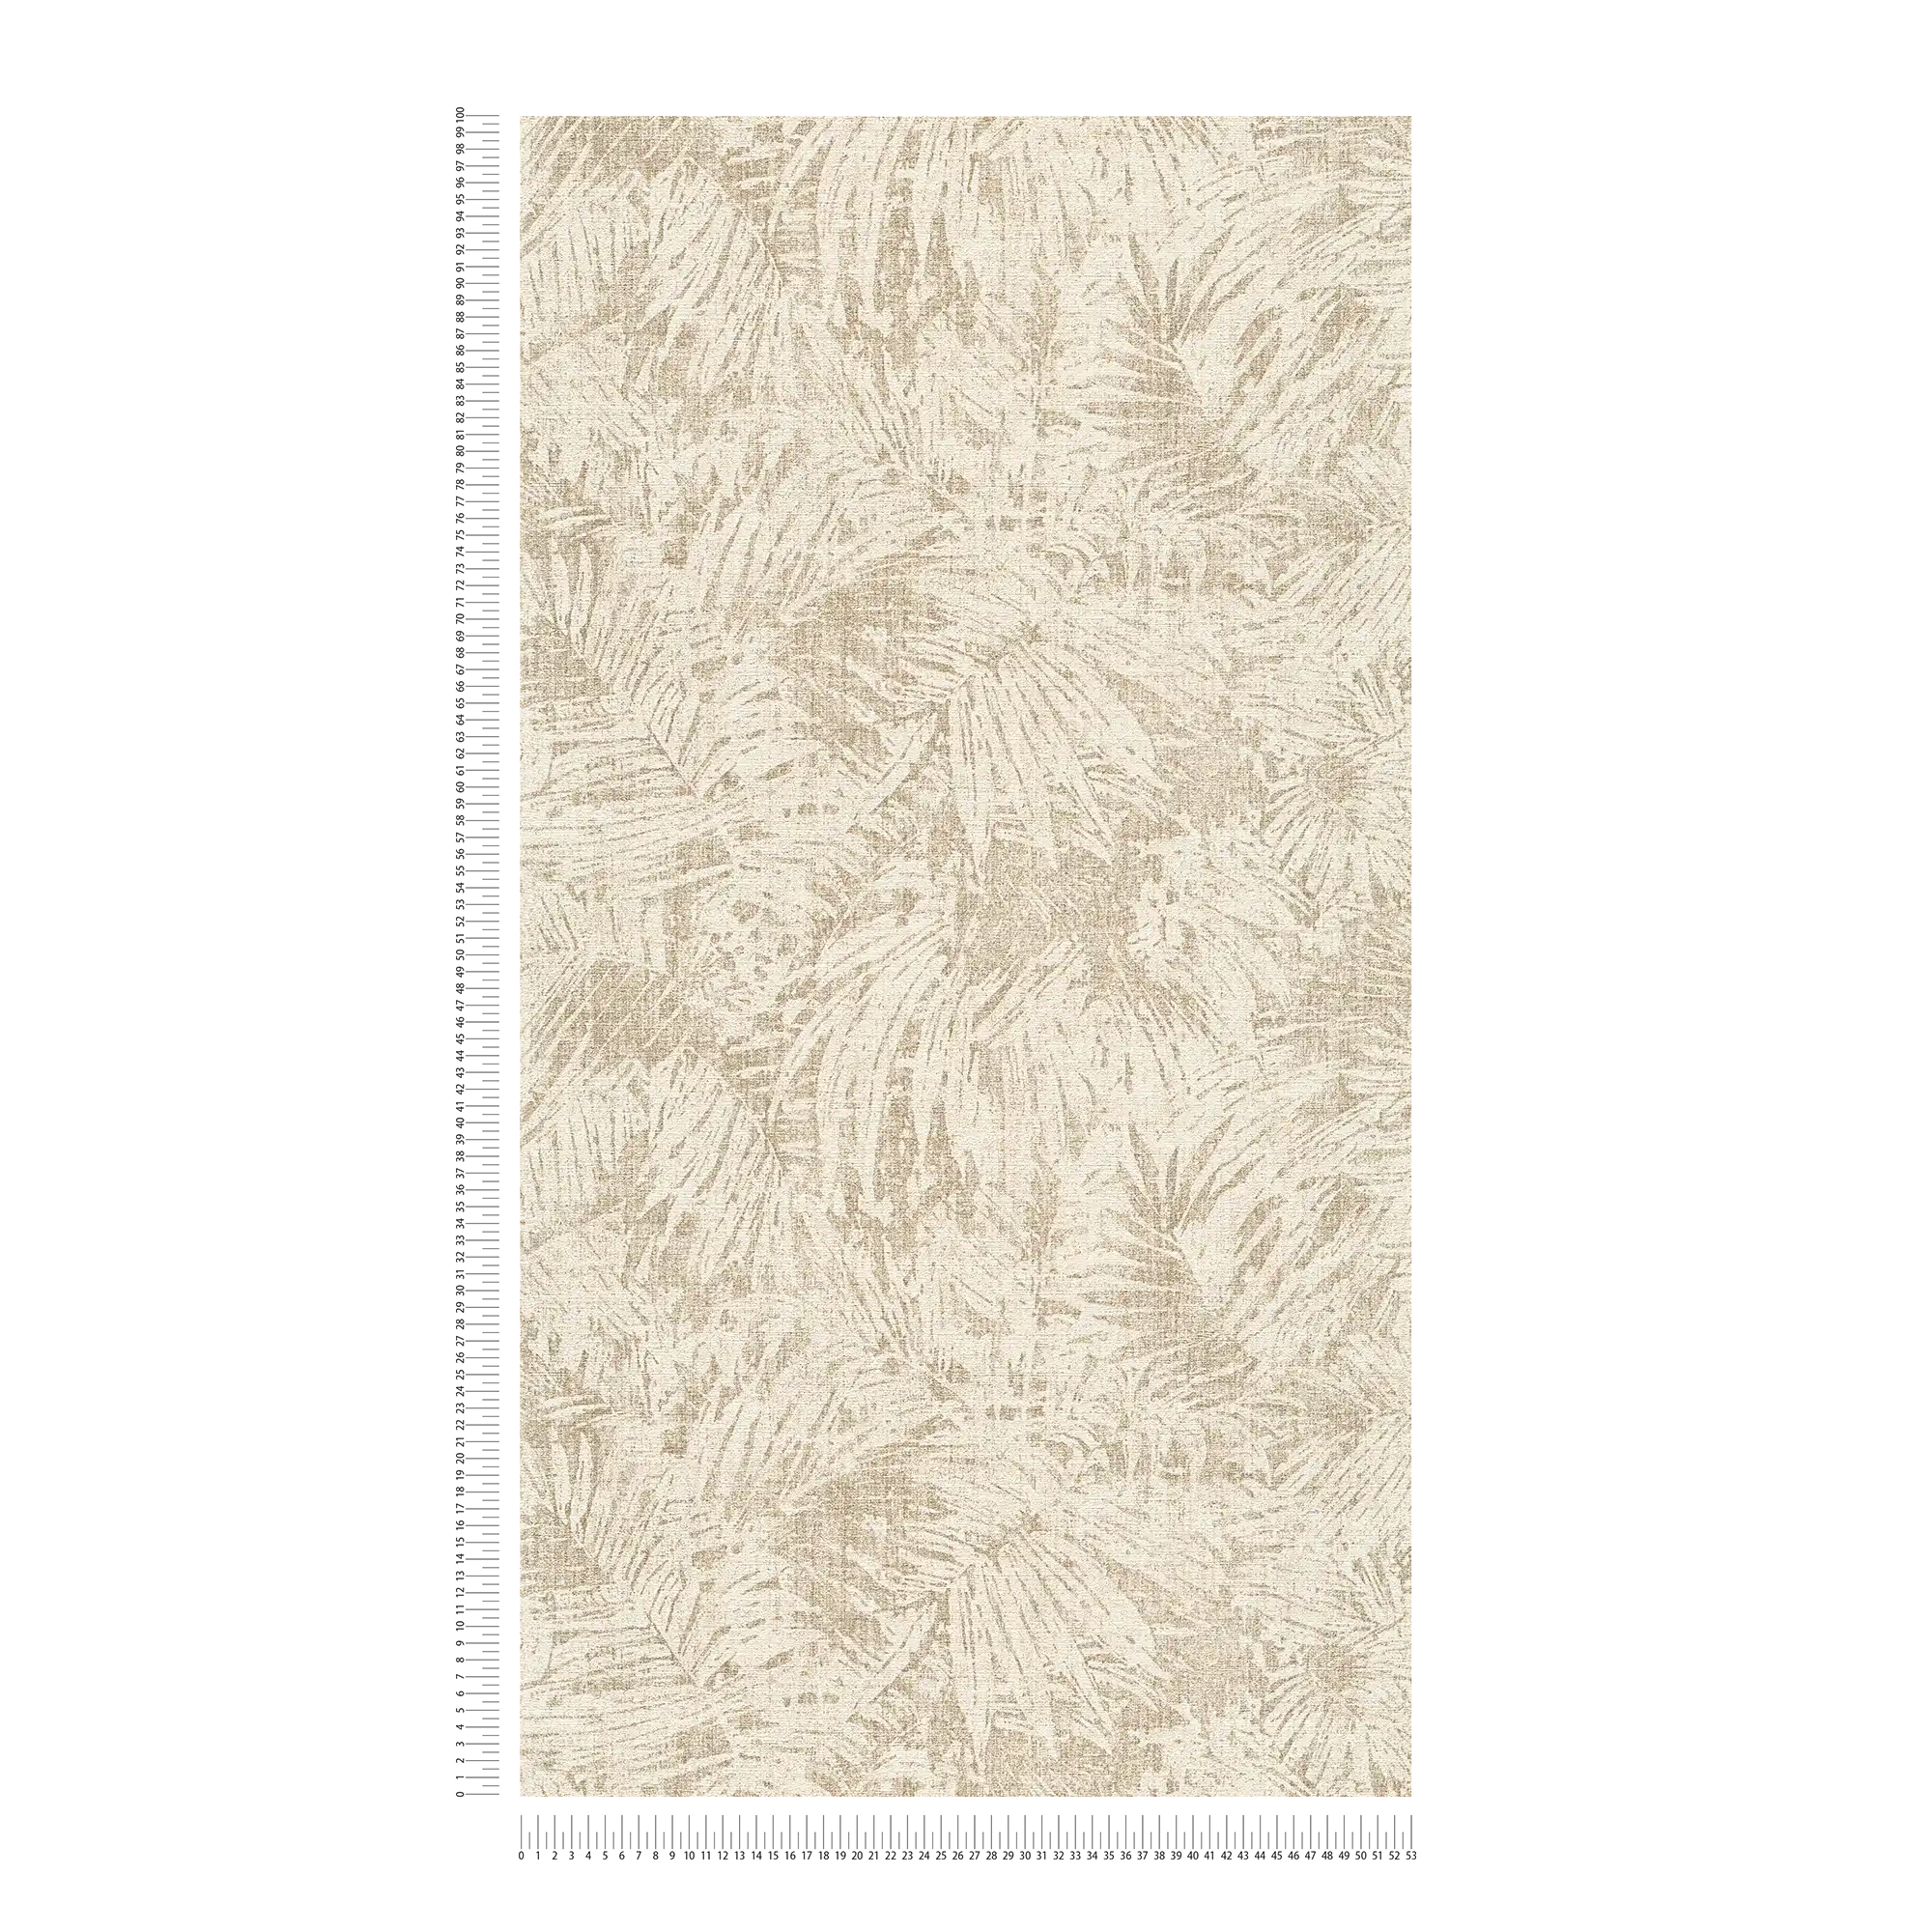             papel pintado con hojas y efecto lino en estilo colonial - marrón, beige
        